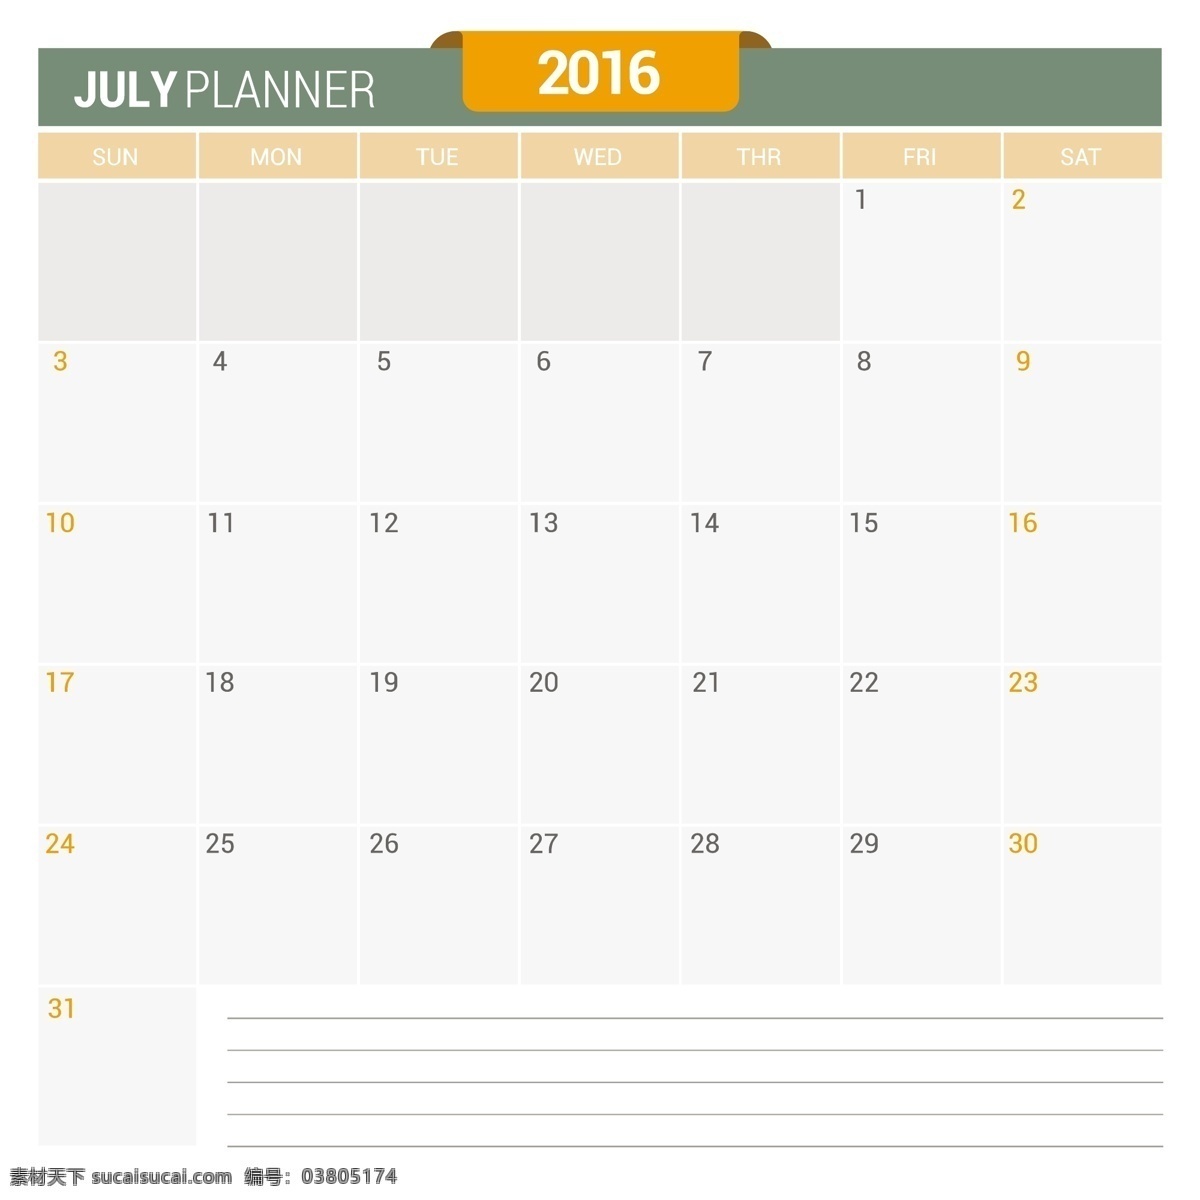 公历 七月 2016 日历 模板 时间 数字 年份 日期 日程 日记 月份 计划 周 组织 年度 月度 白色